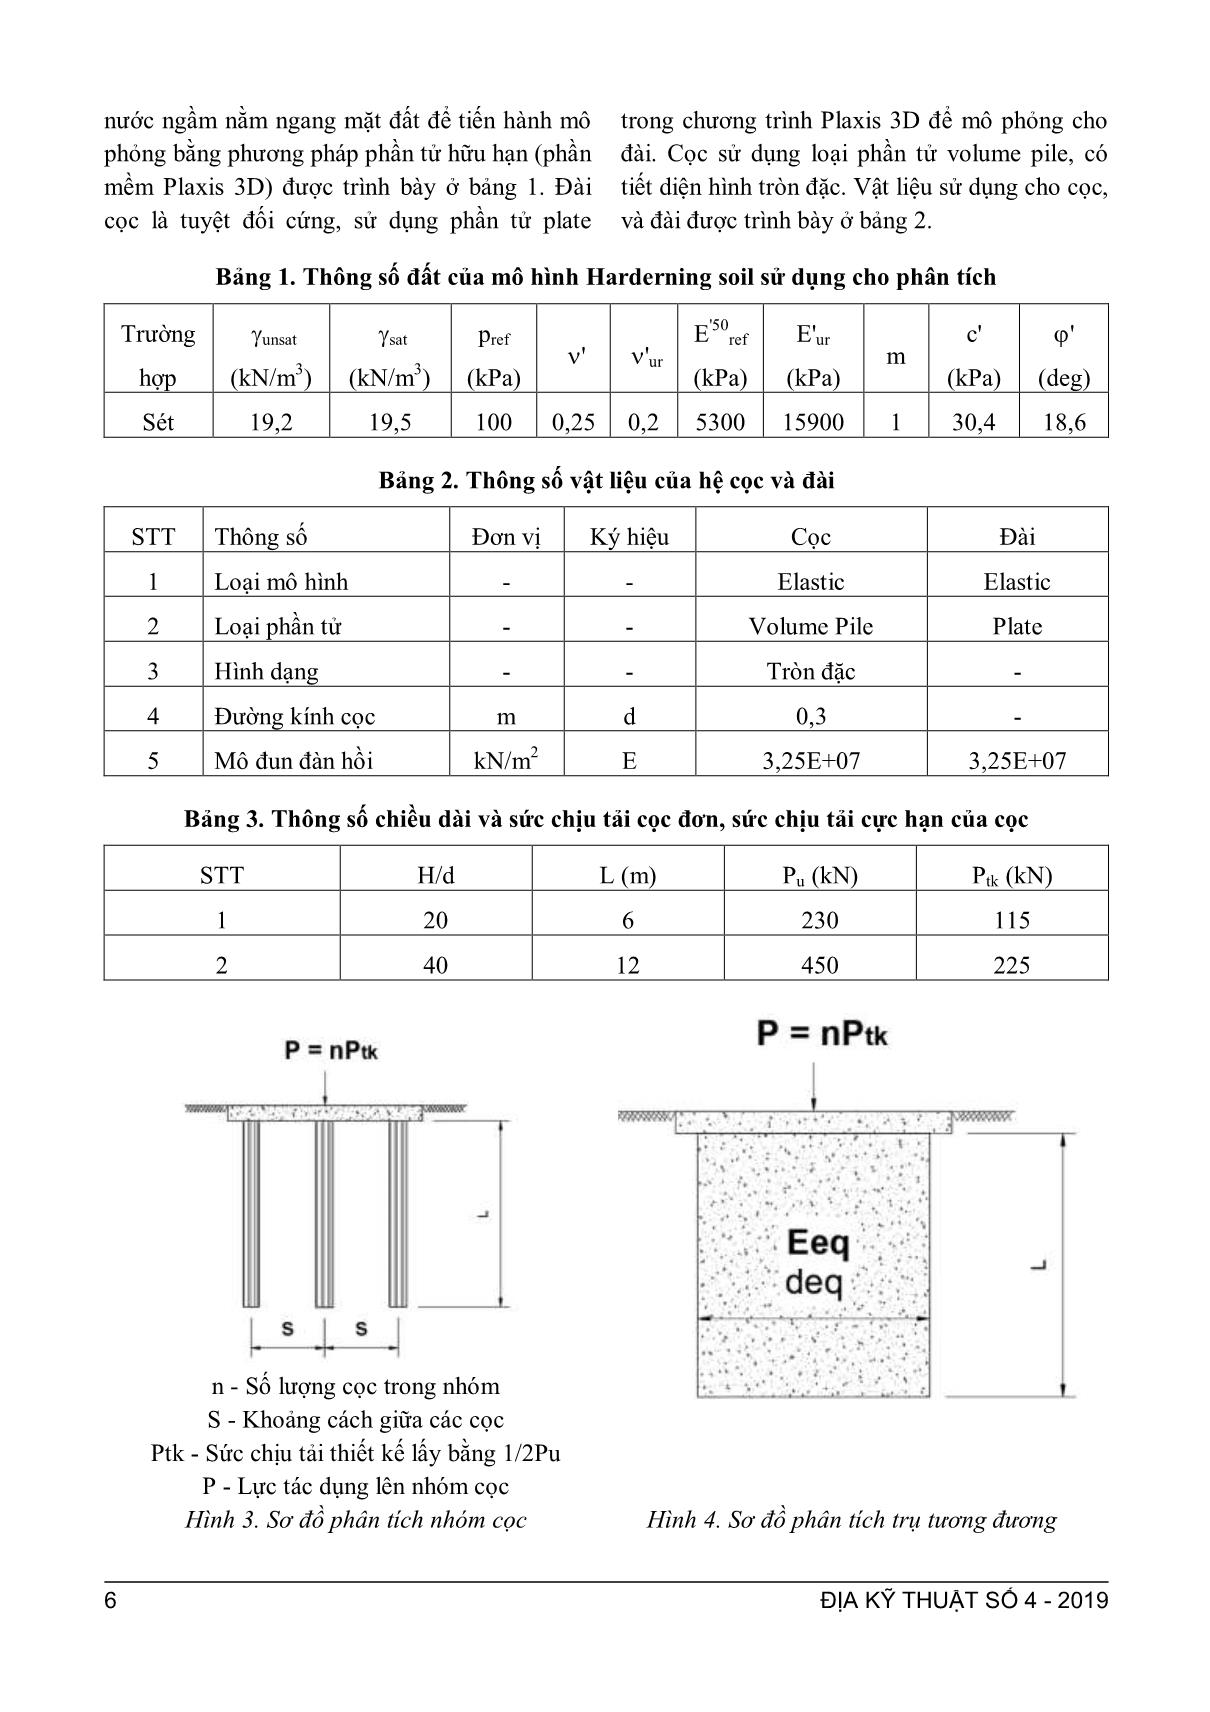 Phân tích các phương pháp ước lượng độ lún của nhóm cọc trang 3